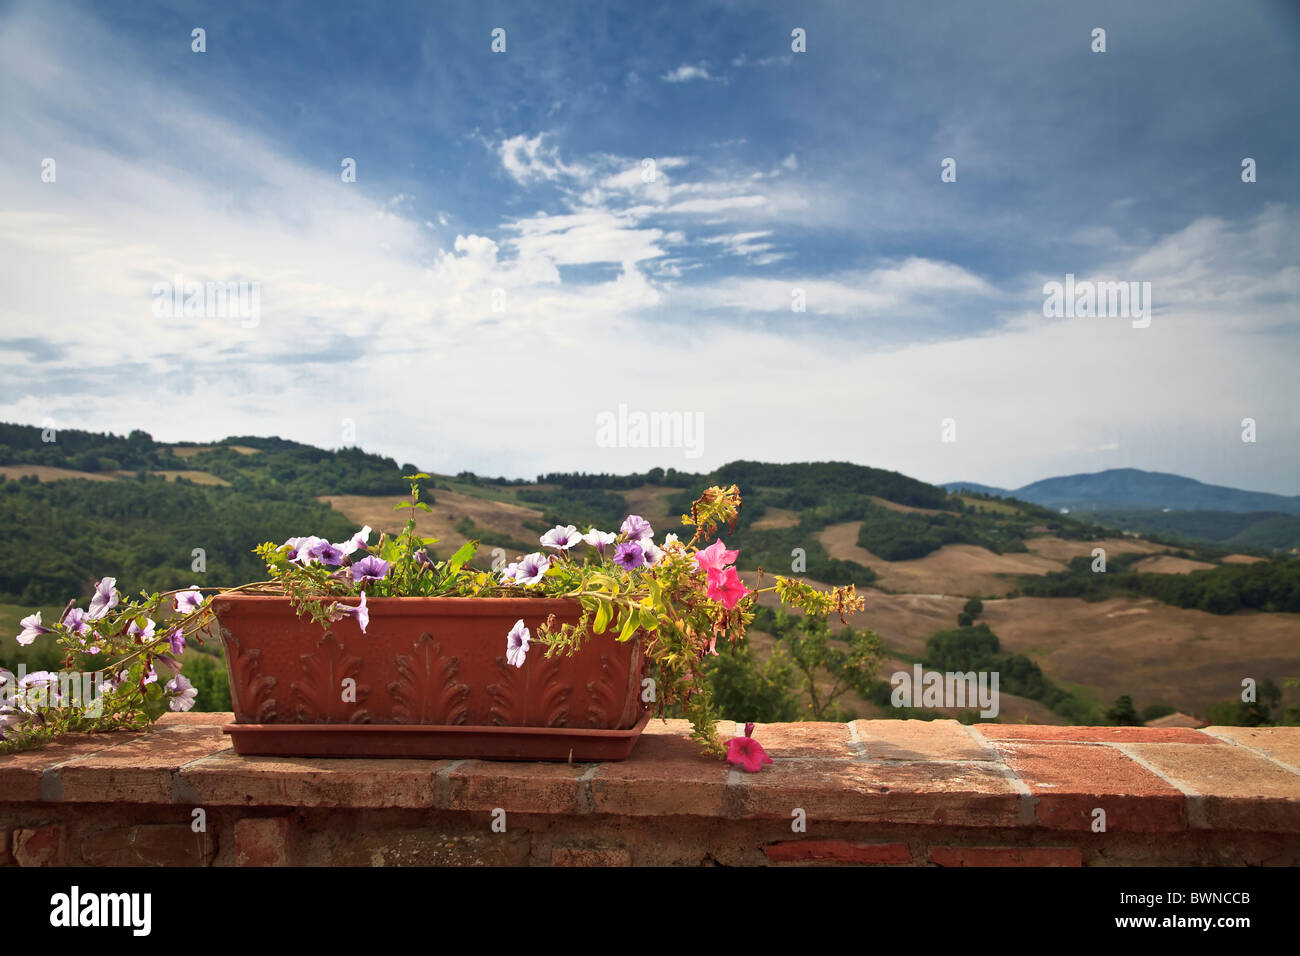 Übertopf gefüllt mit bunten Blumen am Balkon mit Blick auf die toskanische Landschaft unter dramatischen Wolkenhimmel Stockfoto